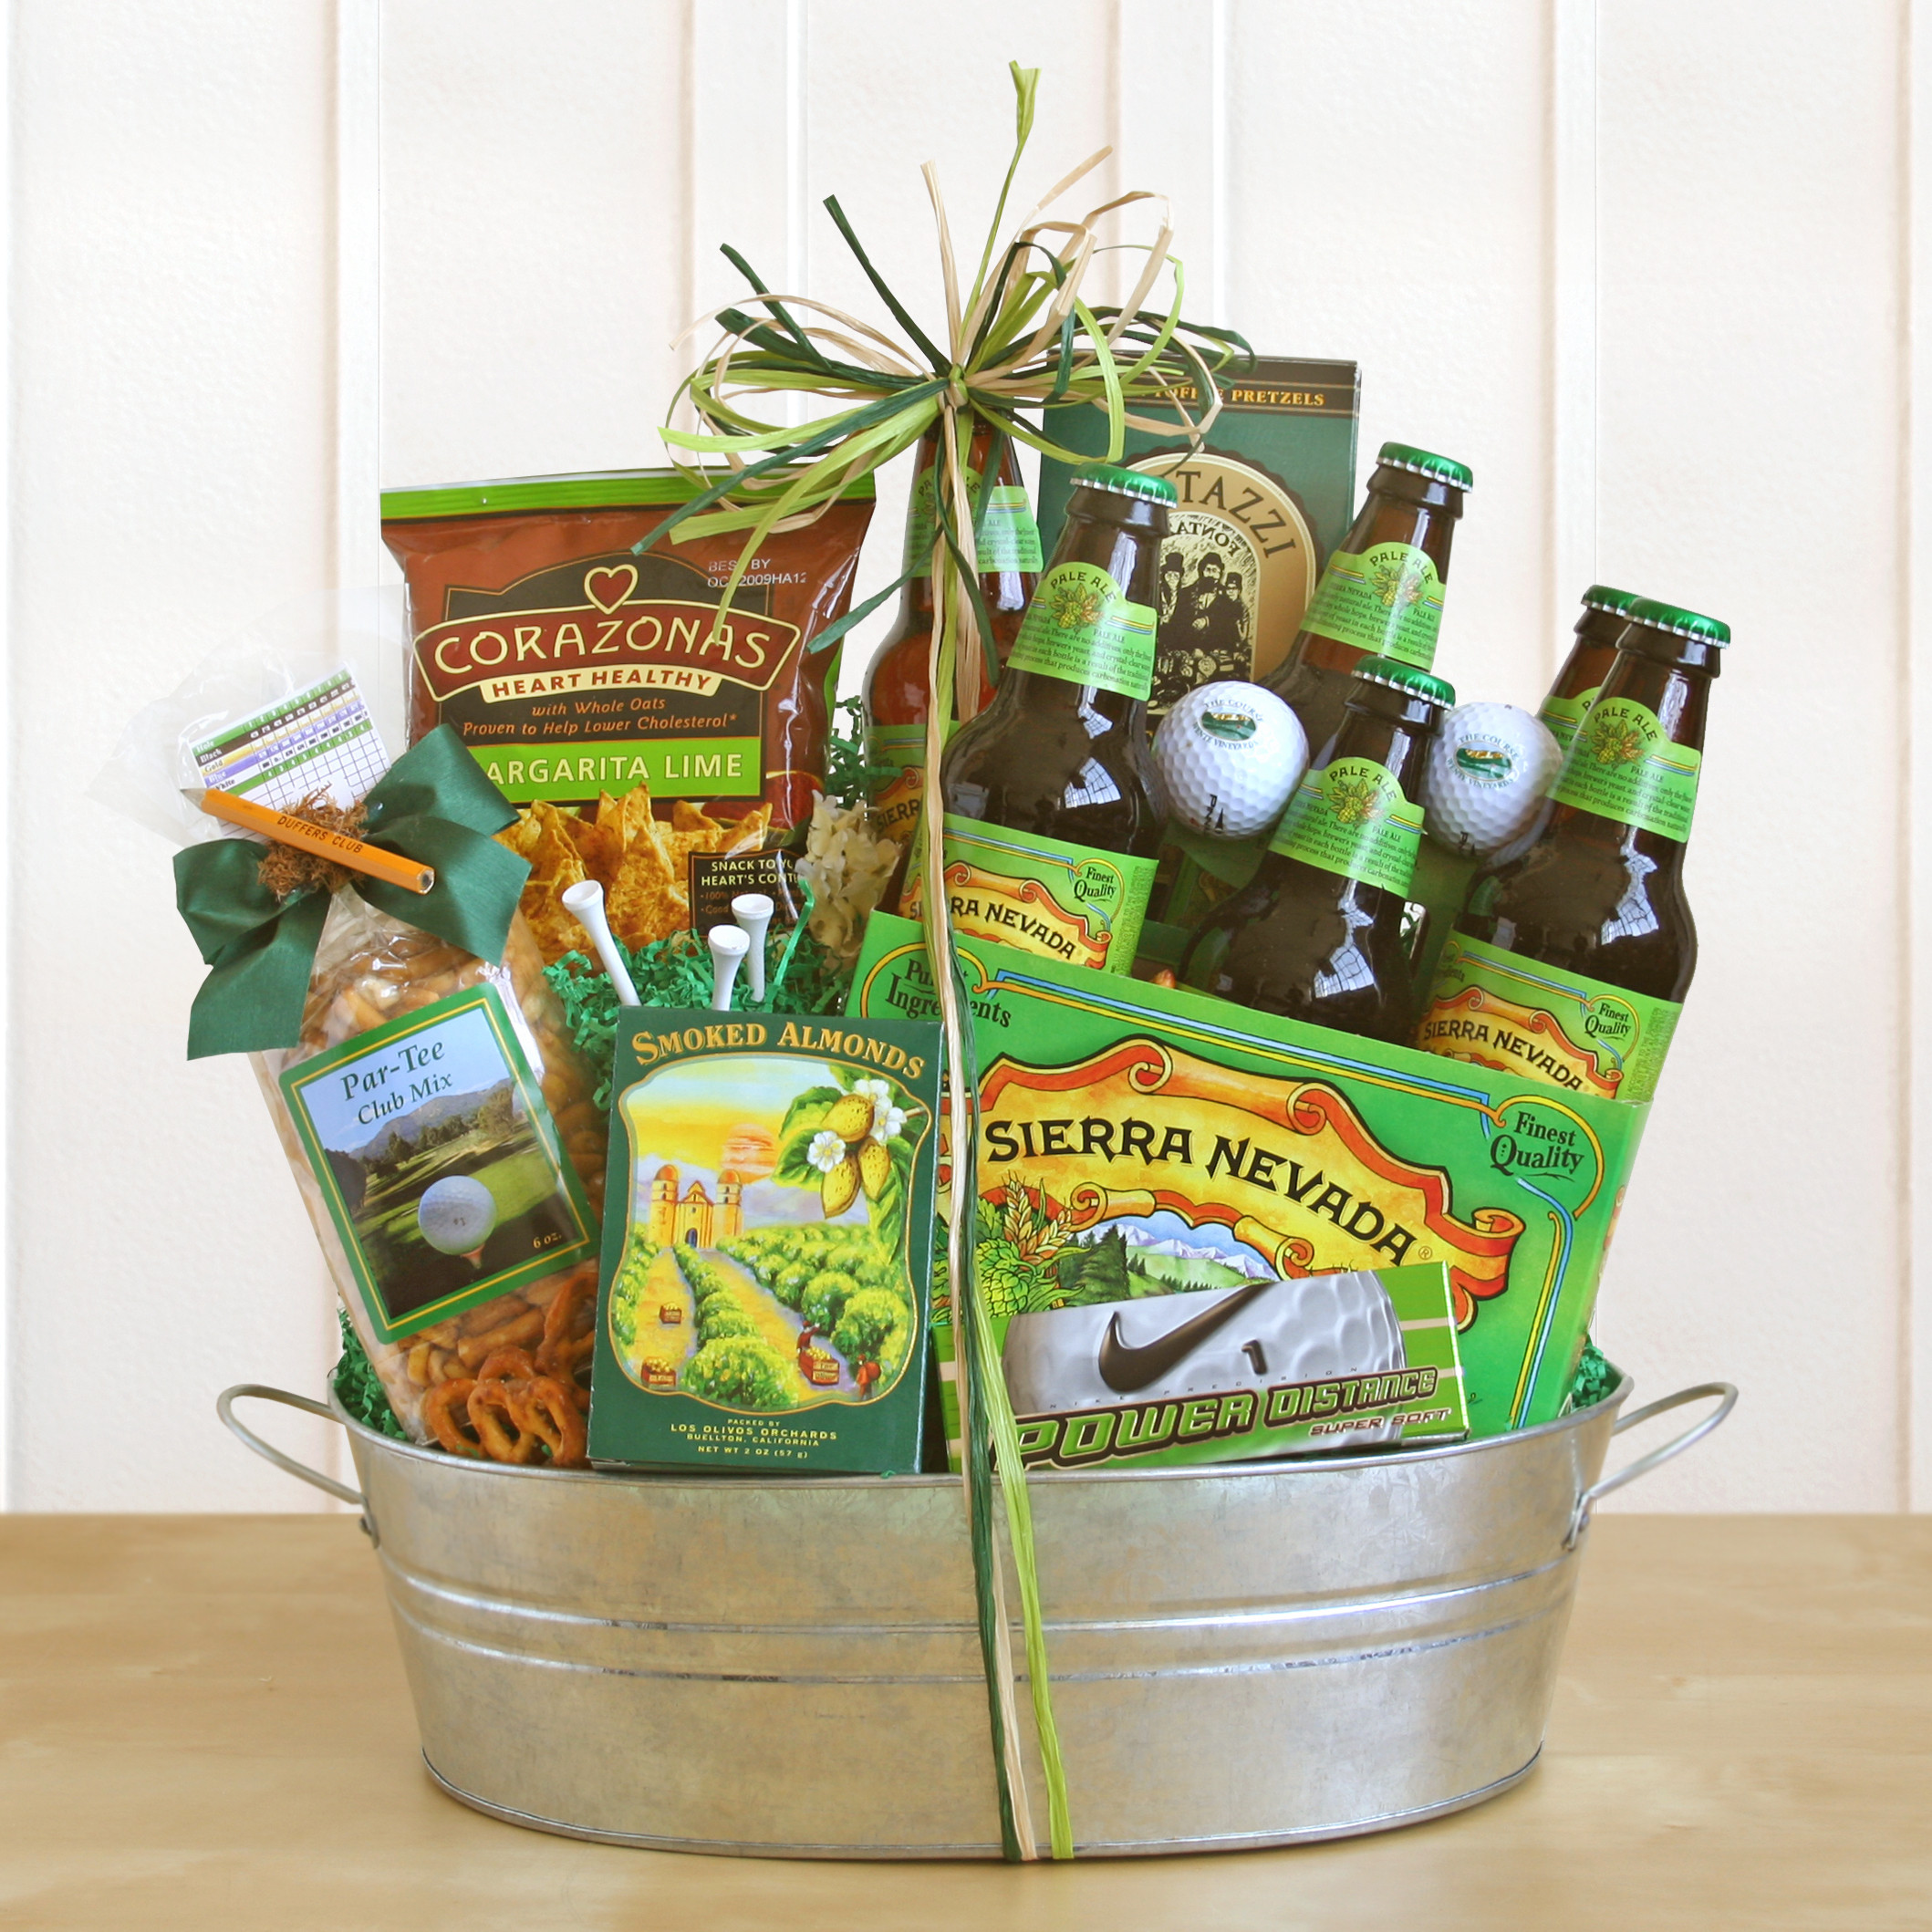 Beer Gift Basket Ideas
 Putting Greens Sierra Nevada Beer Gift Basket – Wine